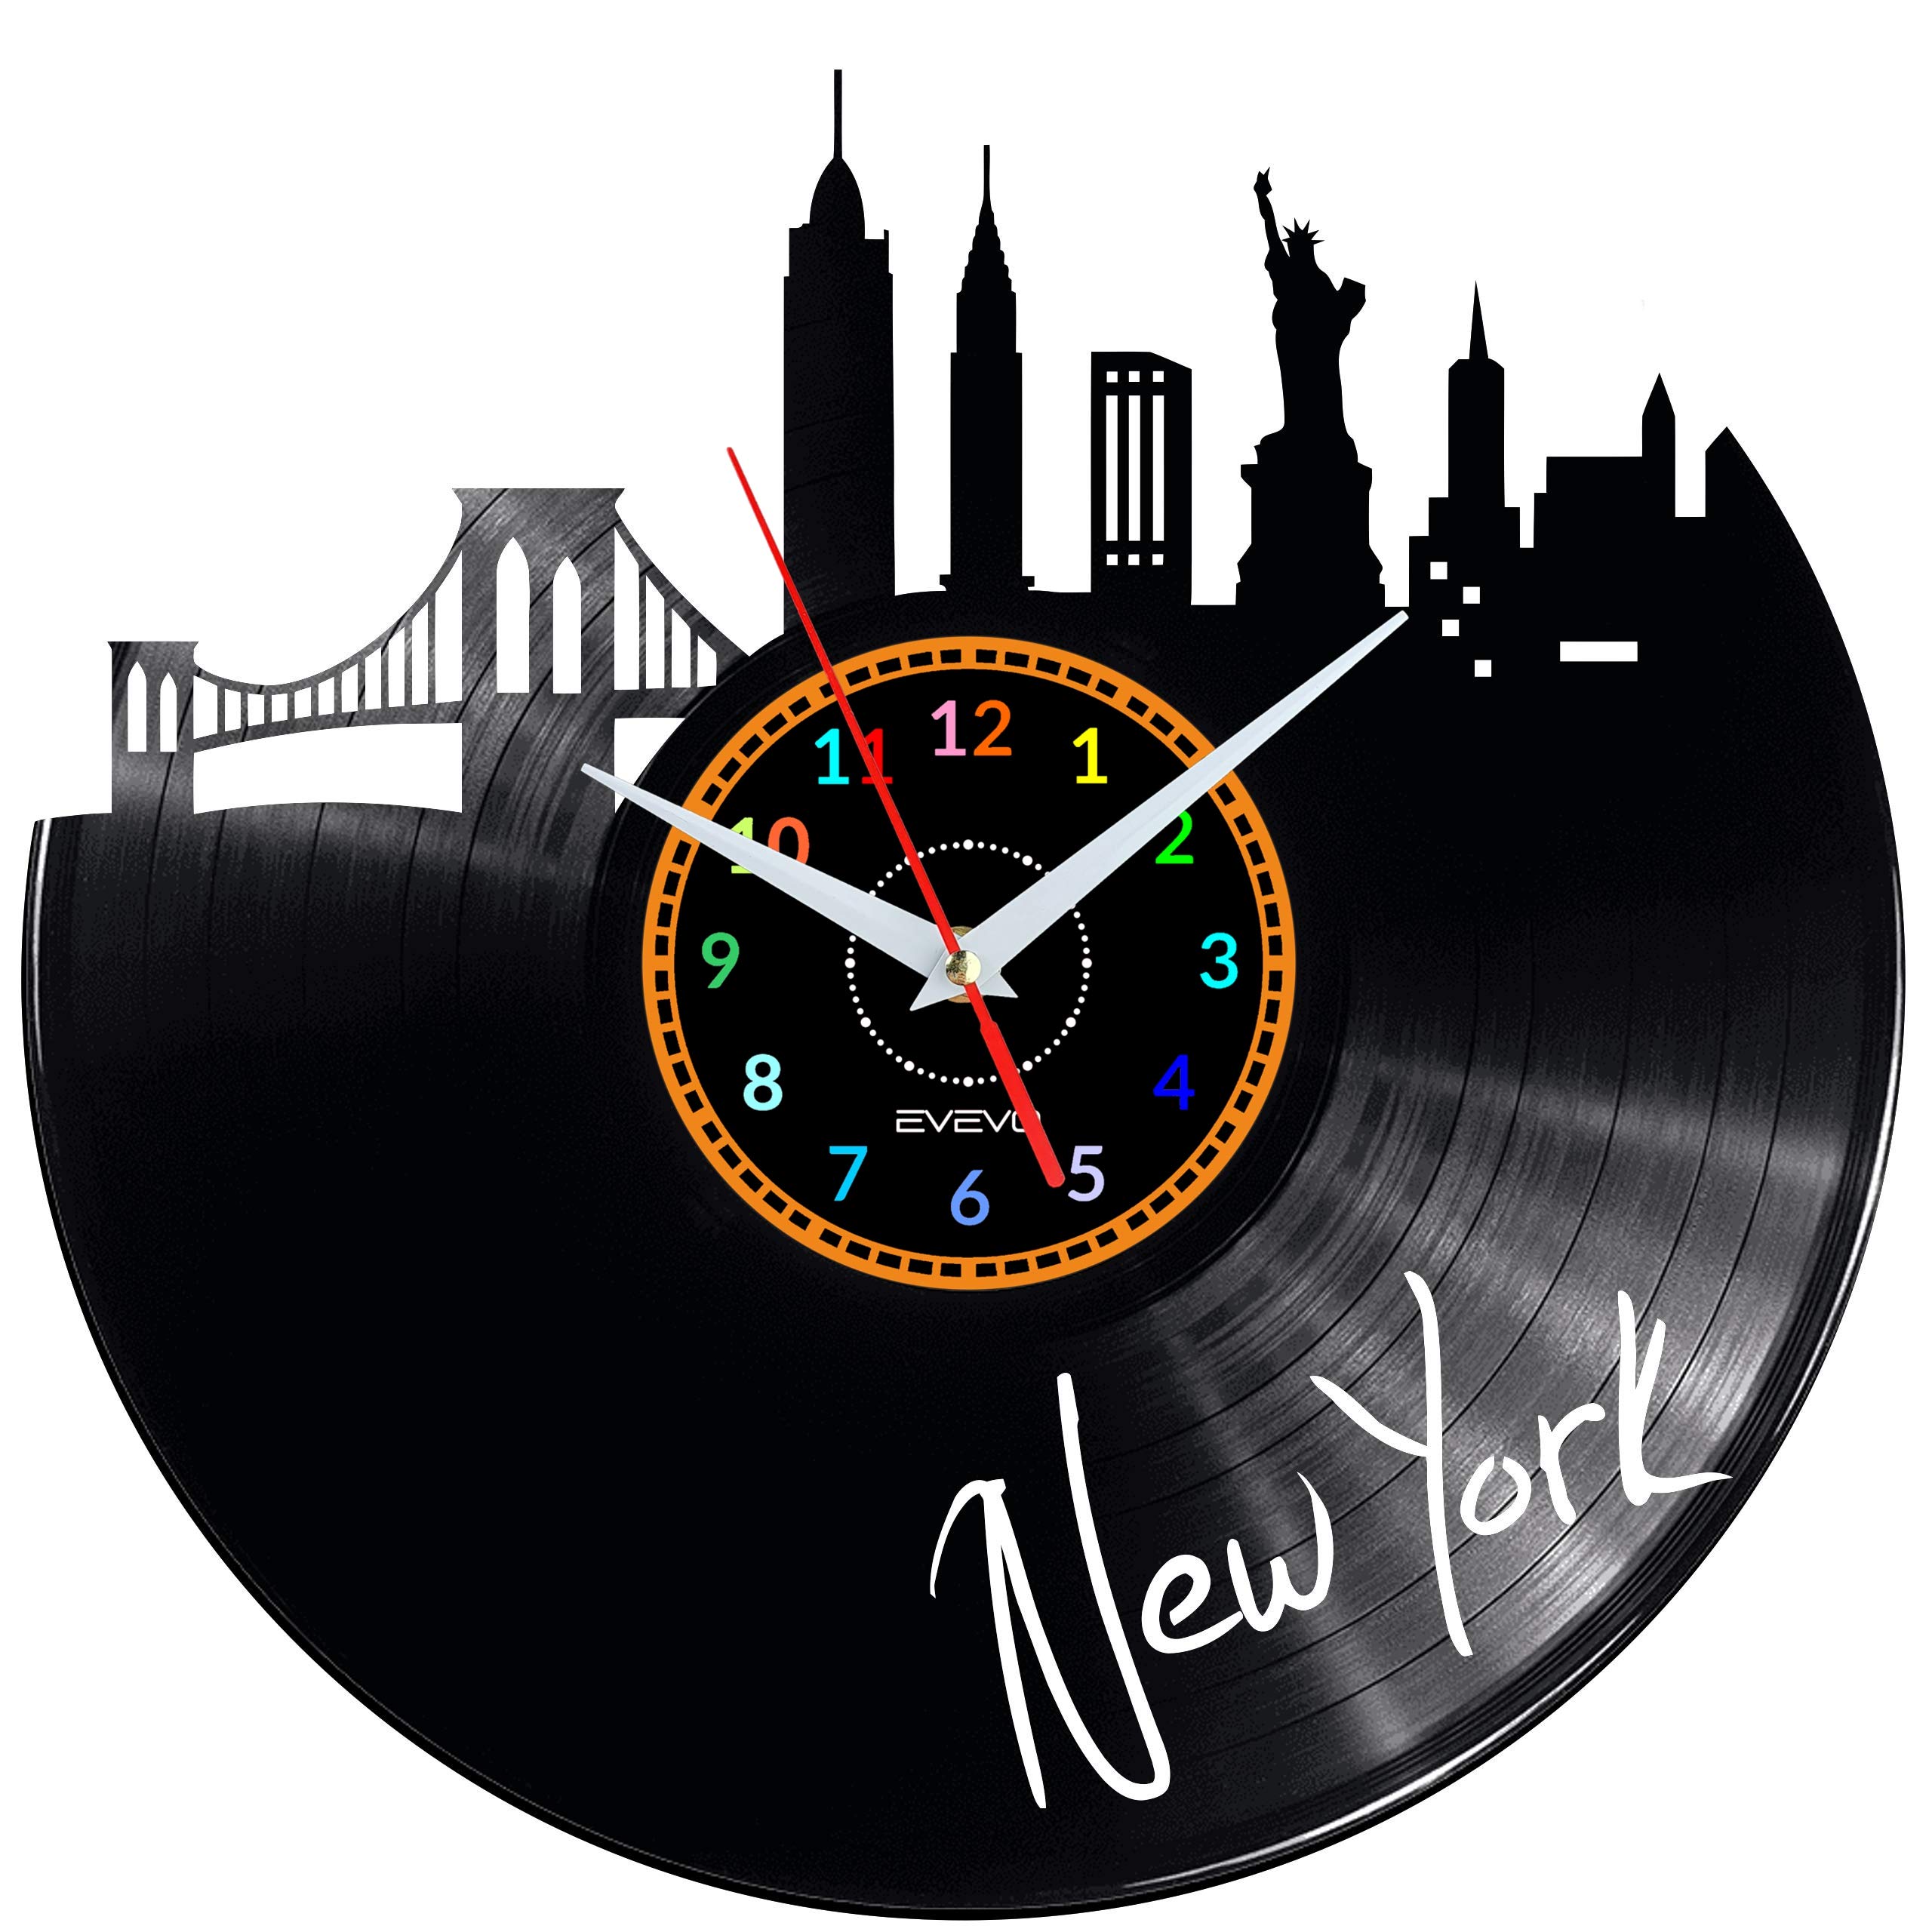 EVEVO New York Wanduhr Vinyl Schallplatte Retro-Uhr groß Uhren Style Raum Home Dekorationen Tolles Geschenk Wanduhr New York